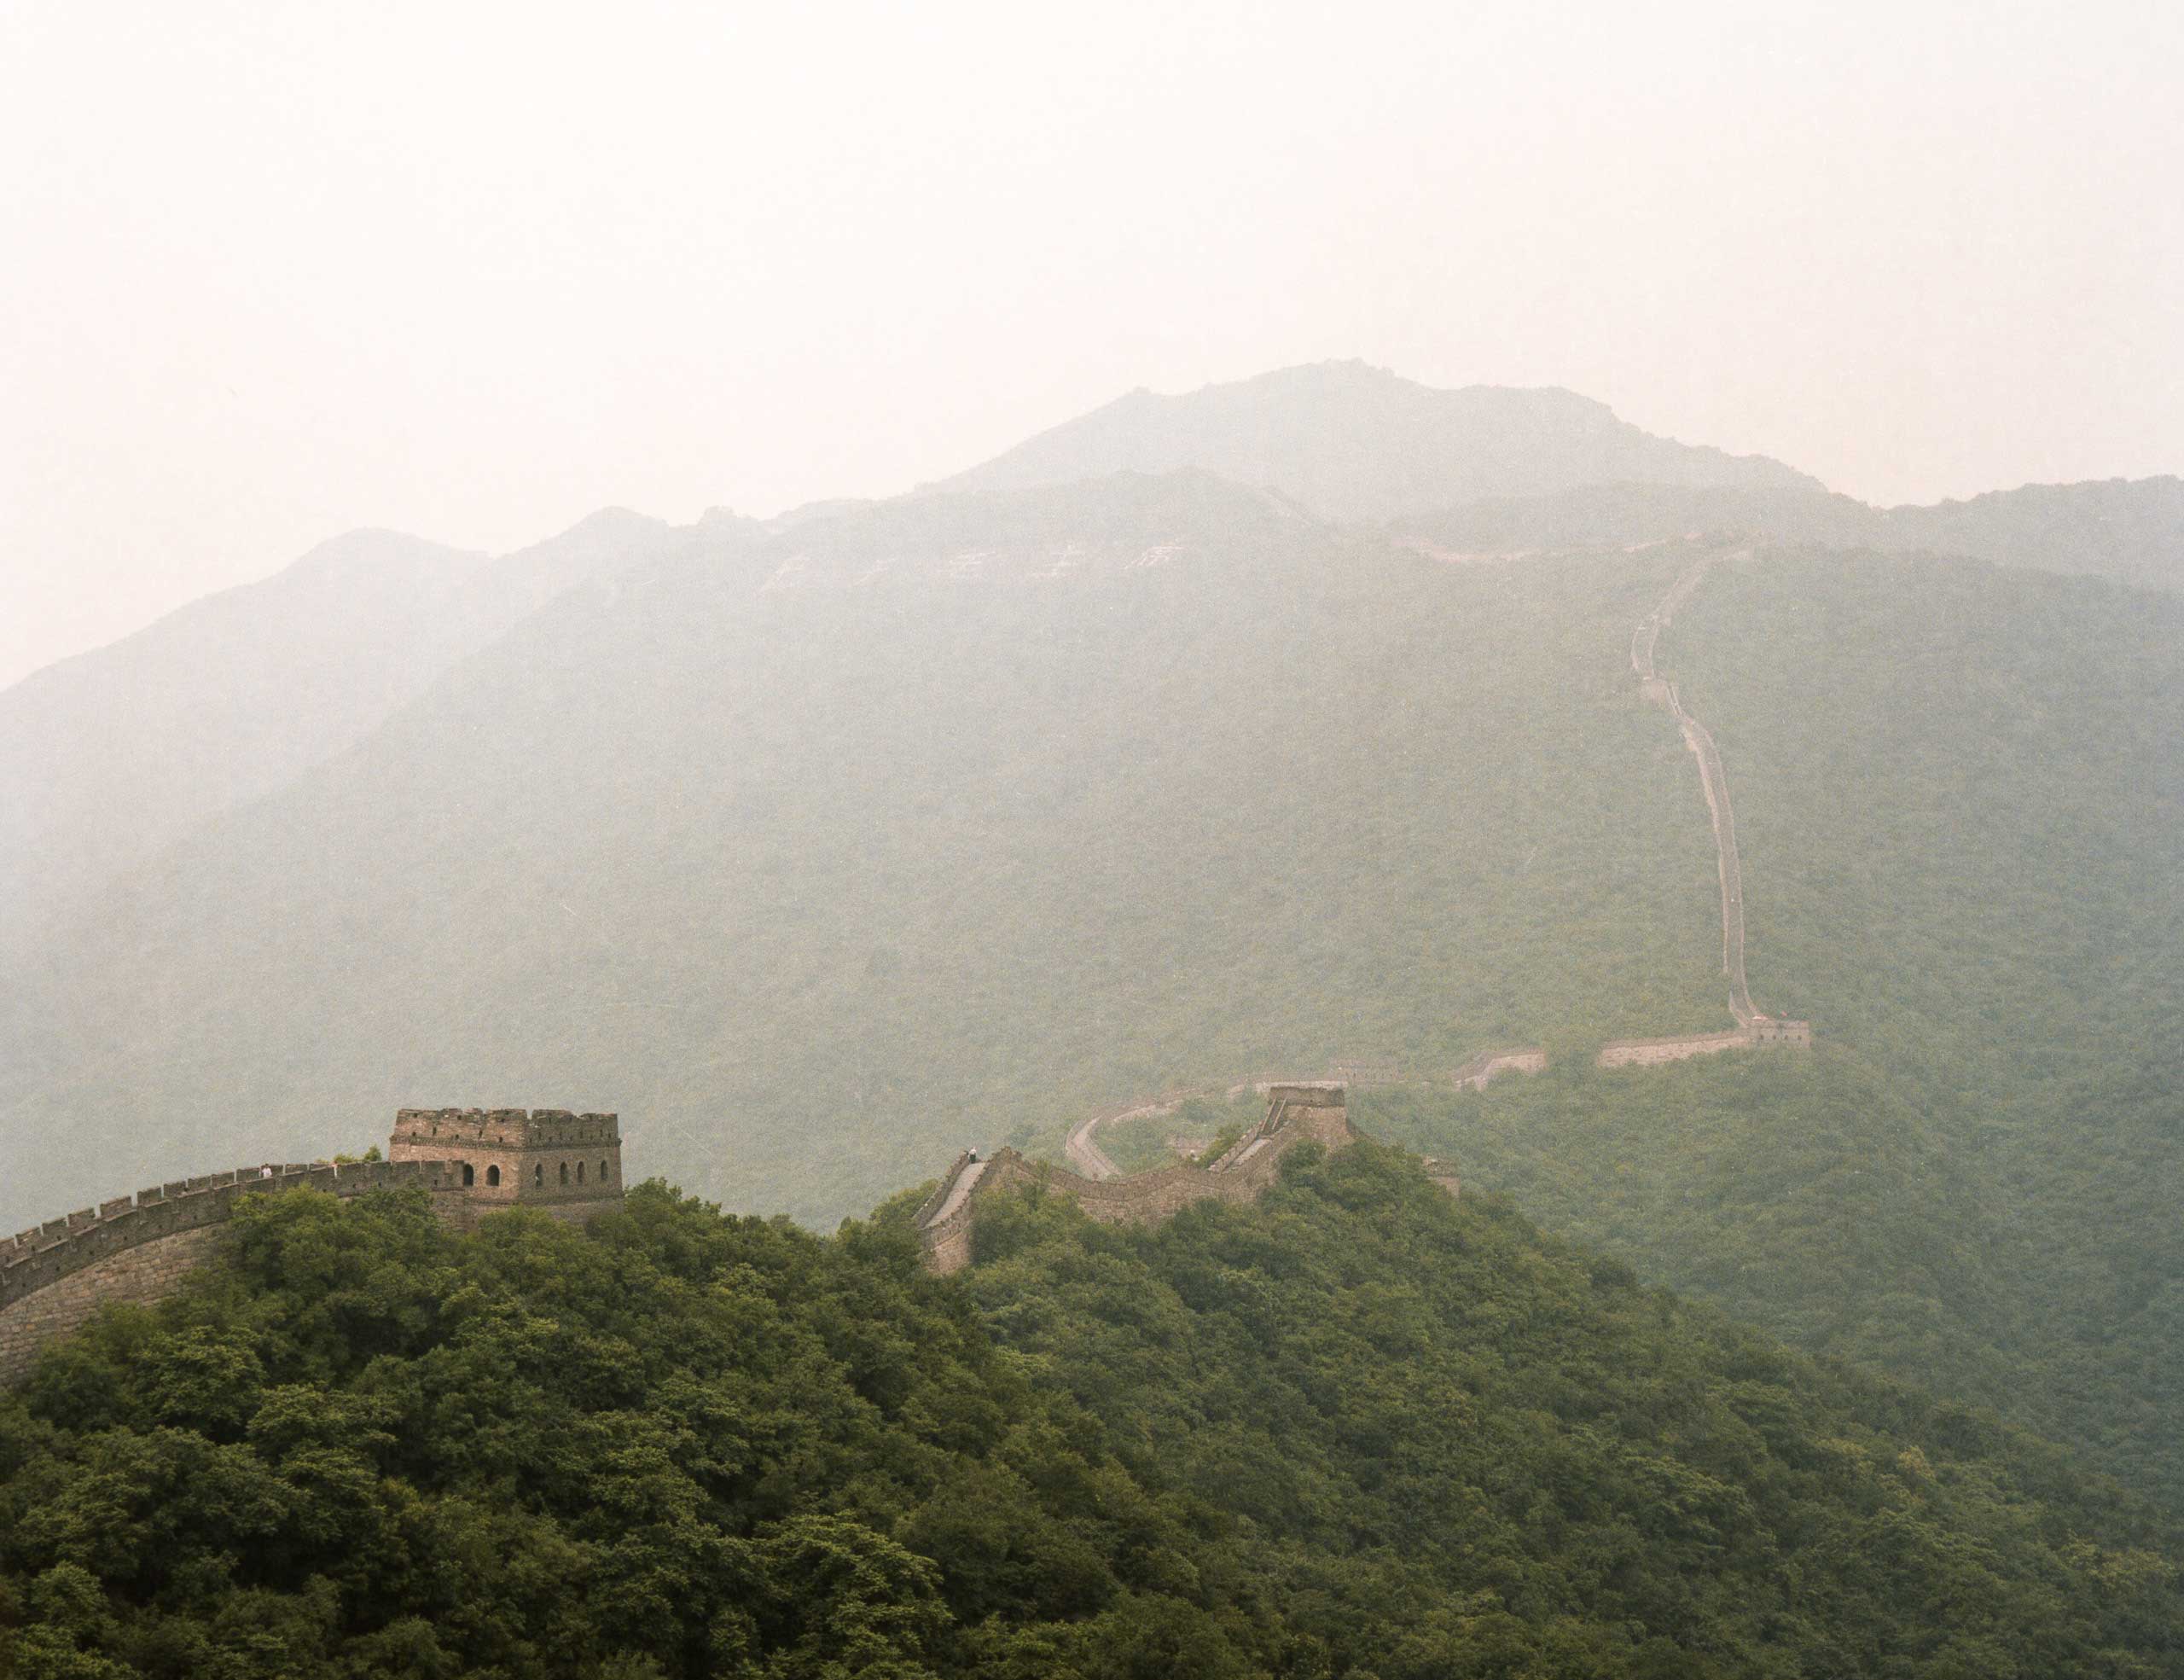 Mutianyu Great Wall, Beijing.